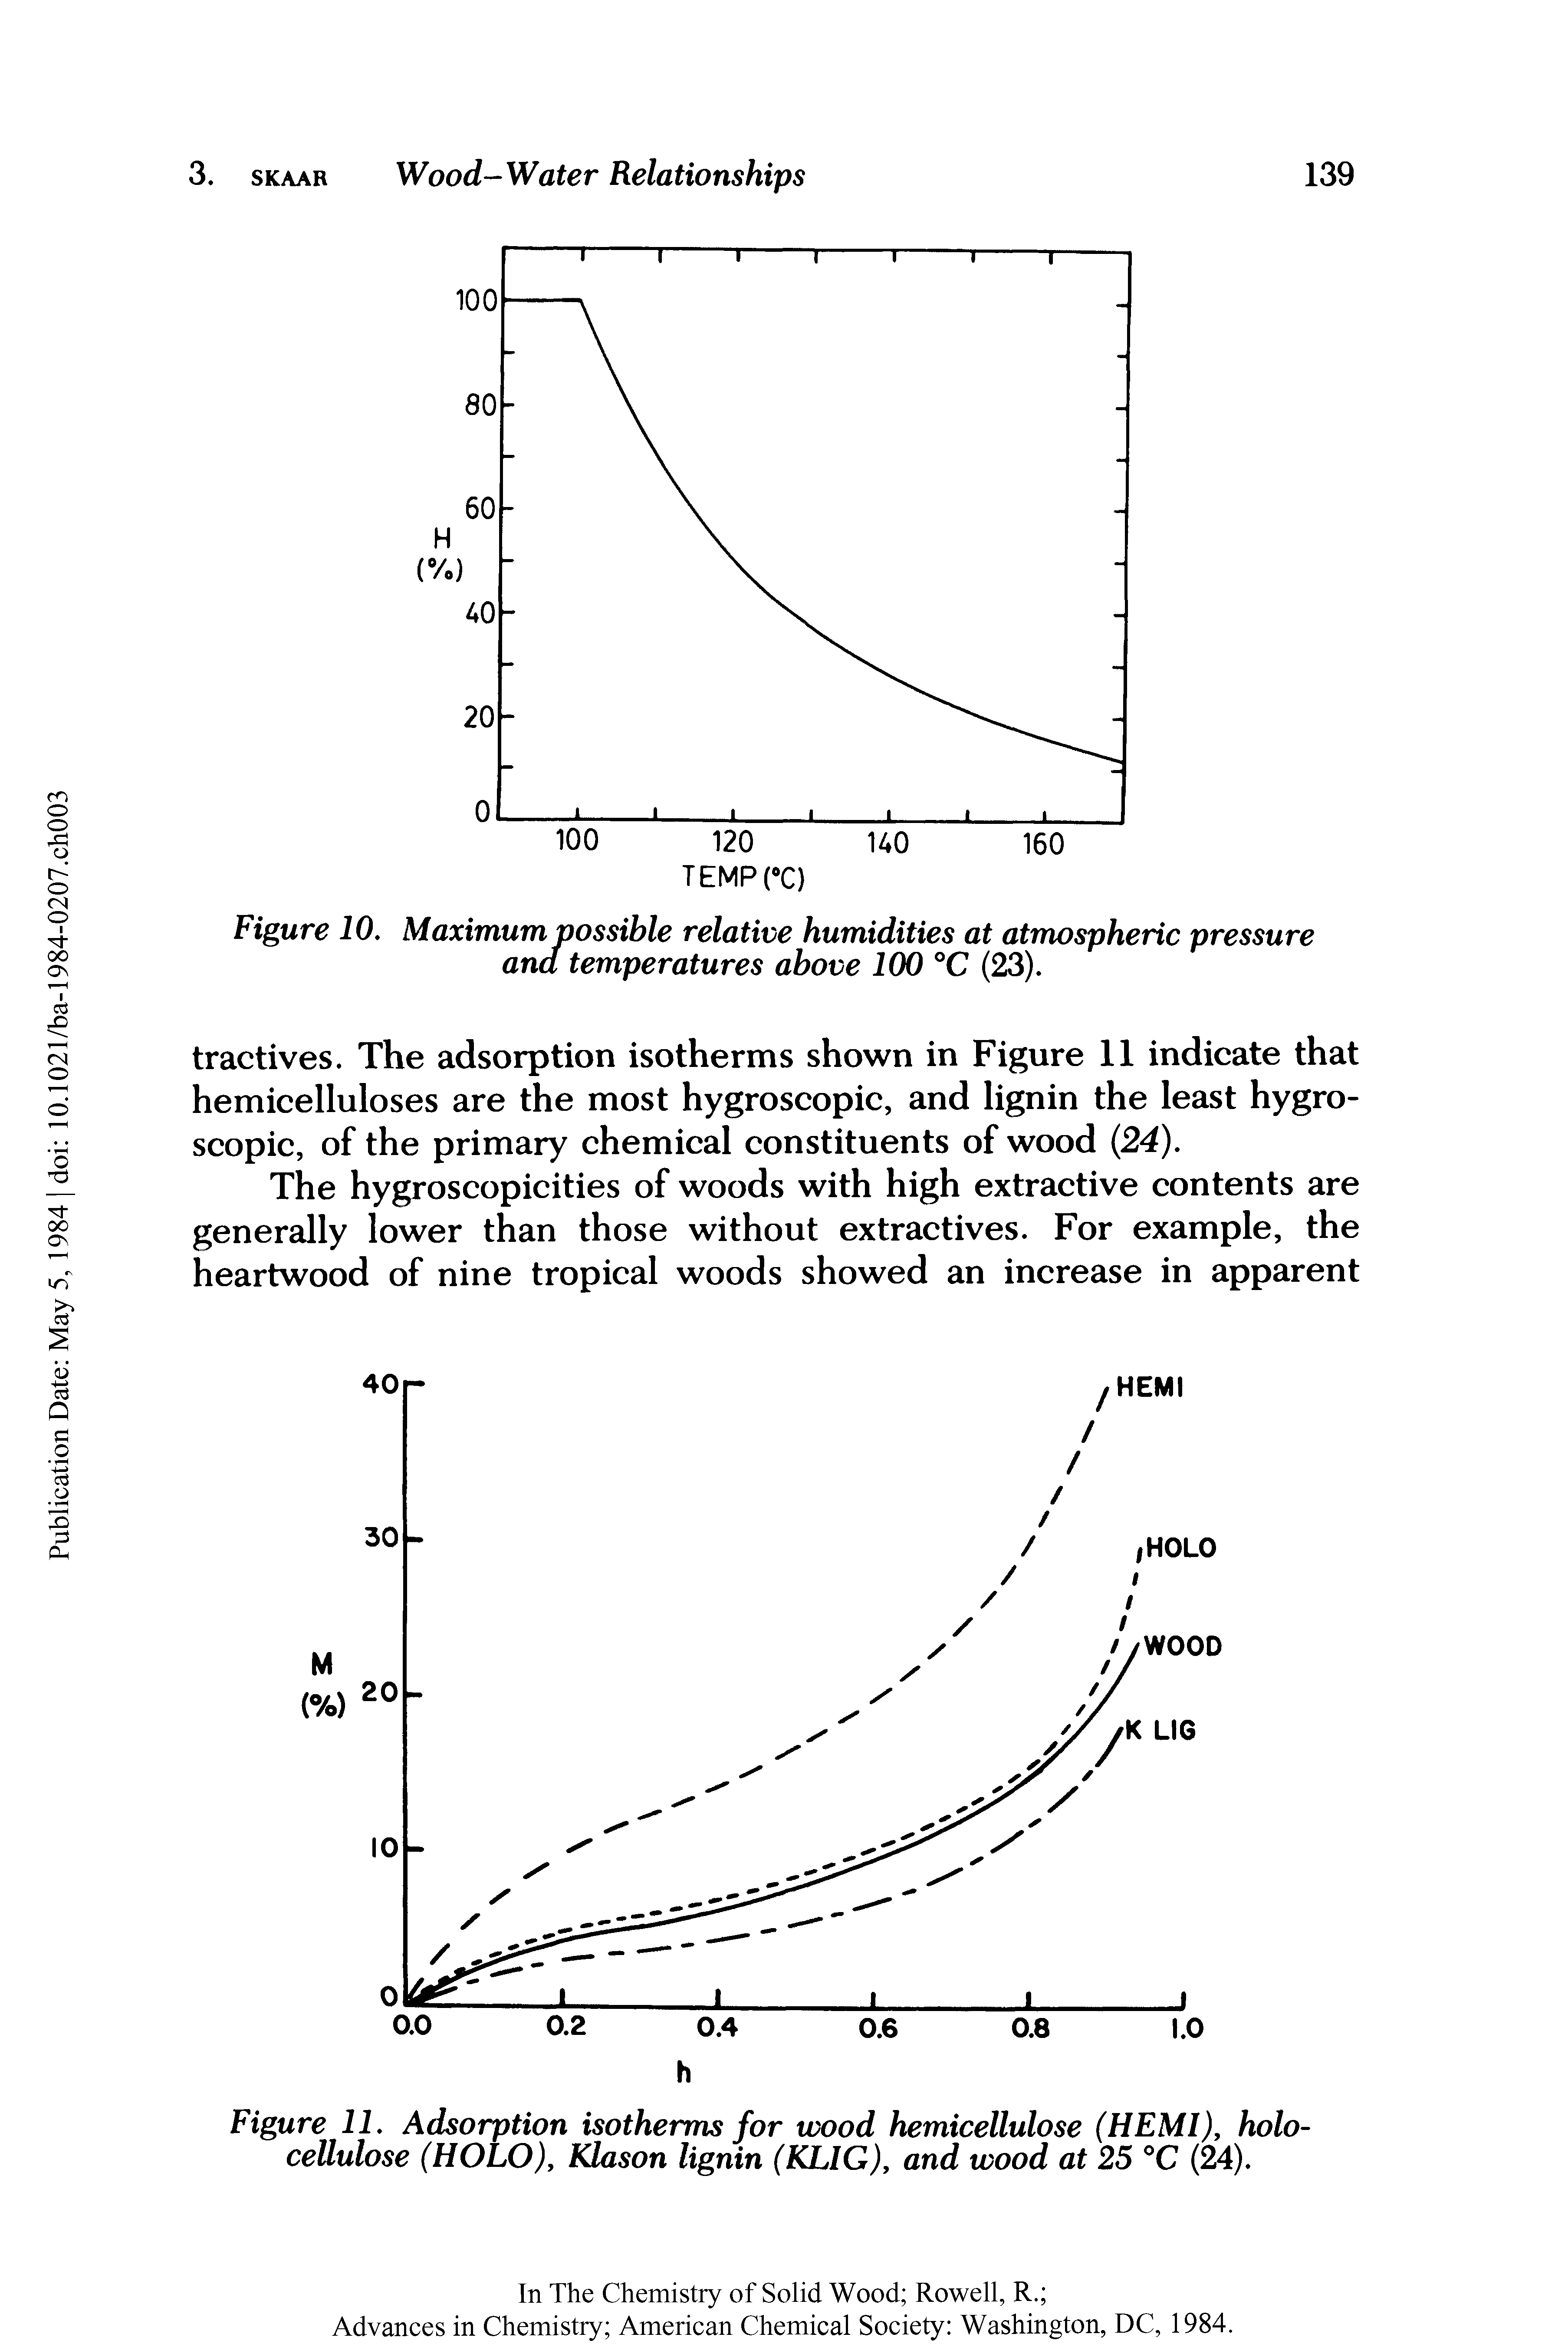 Figure 10, Maximum possible relative humidities at atmospheric pressure ana temperatures above 100 °C (23).